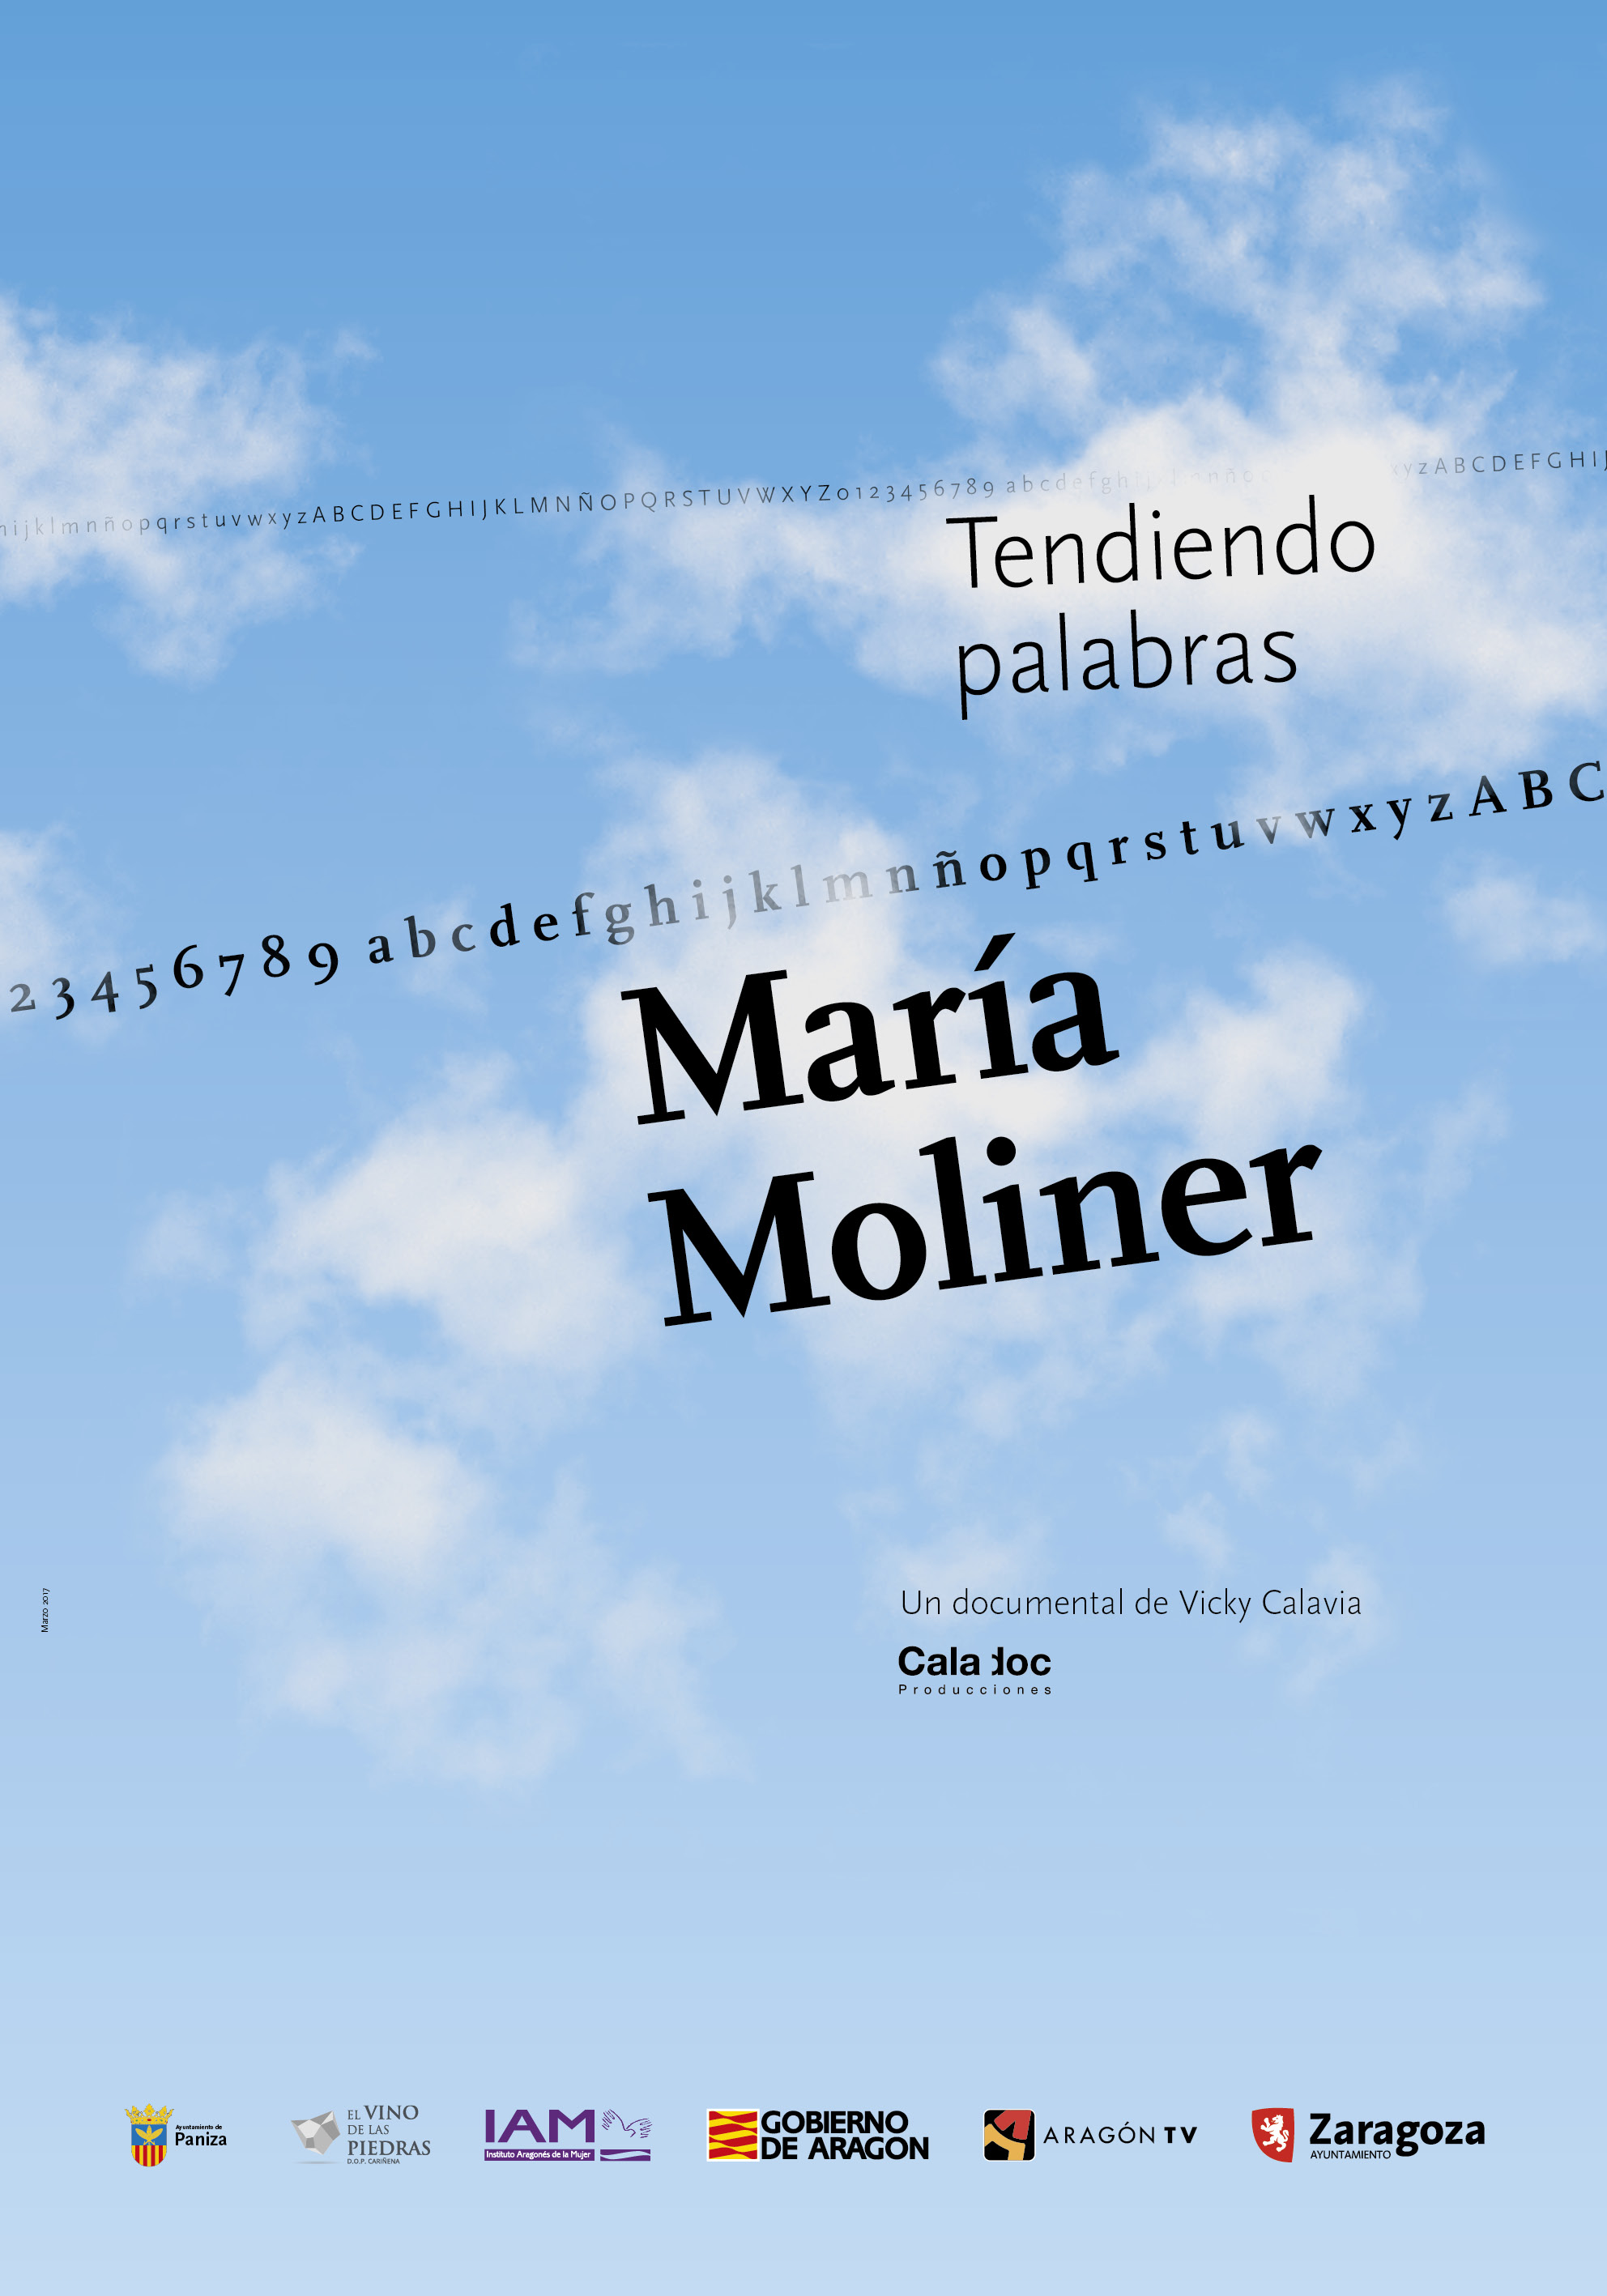 8 de marzo. Cine para la mujer. María Moliner, tendiendo palabras